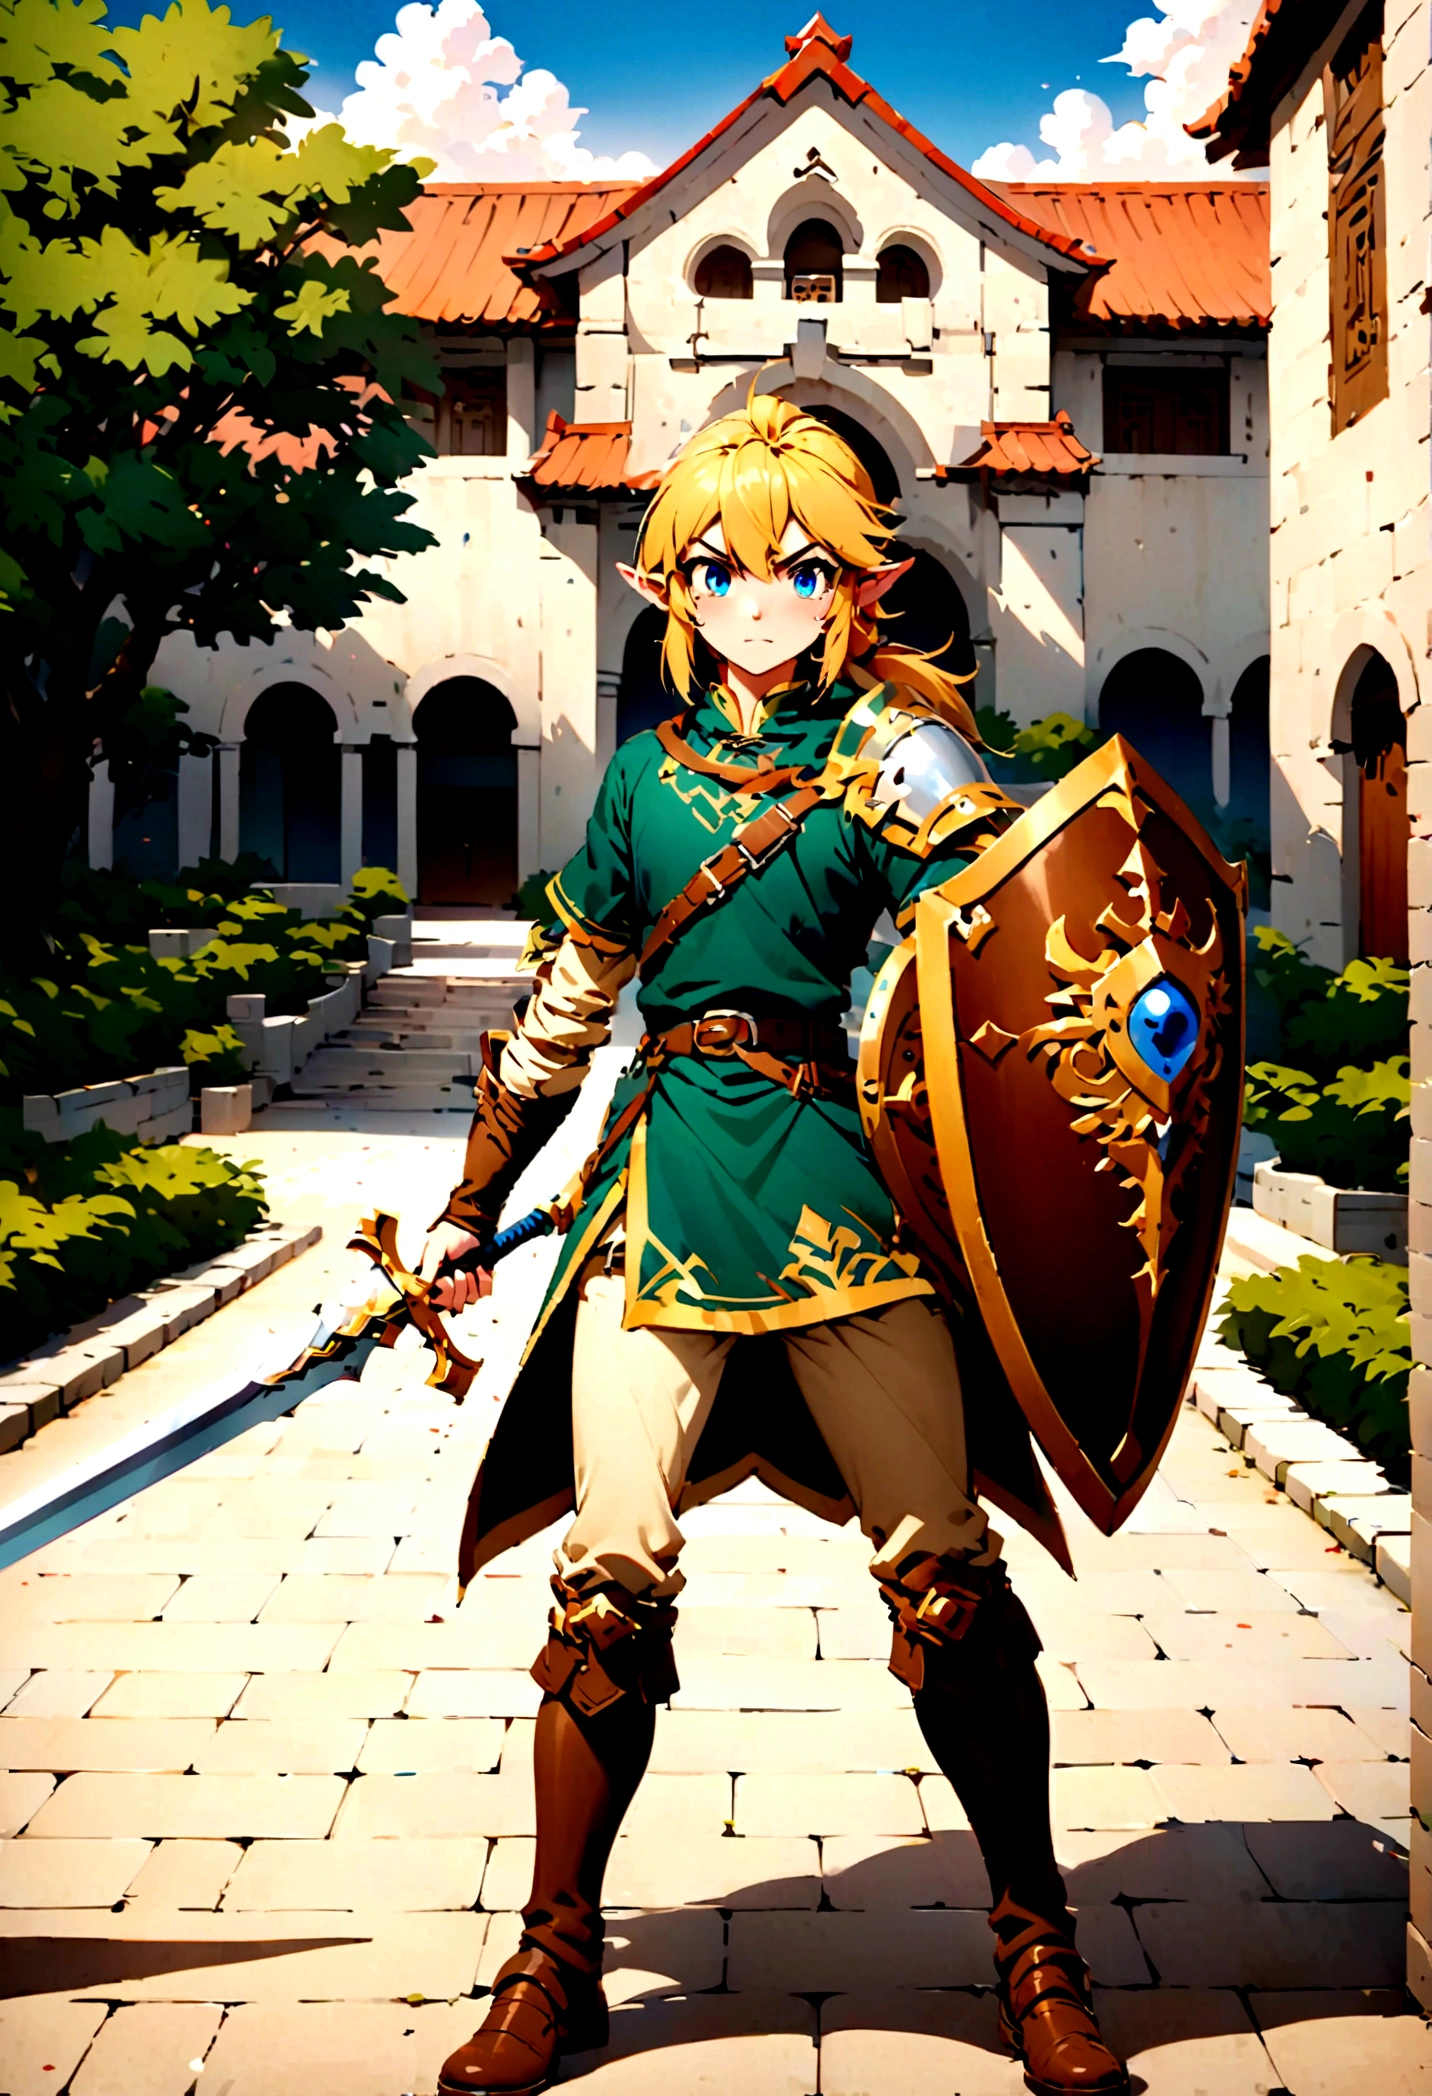 Link de Zelda lágrimas do Reino segurando sua espada e escudo, parado em um campus universitário chinês